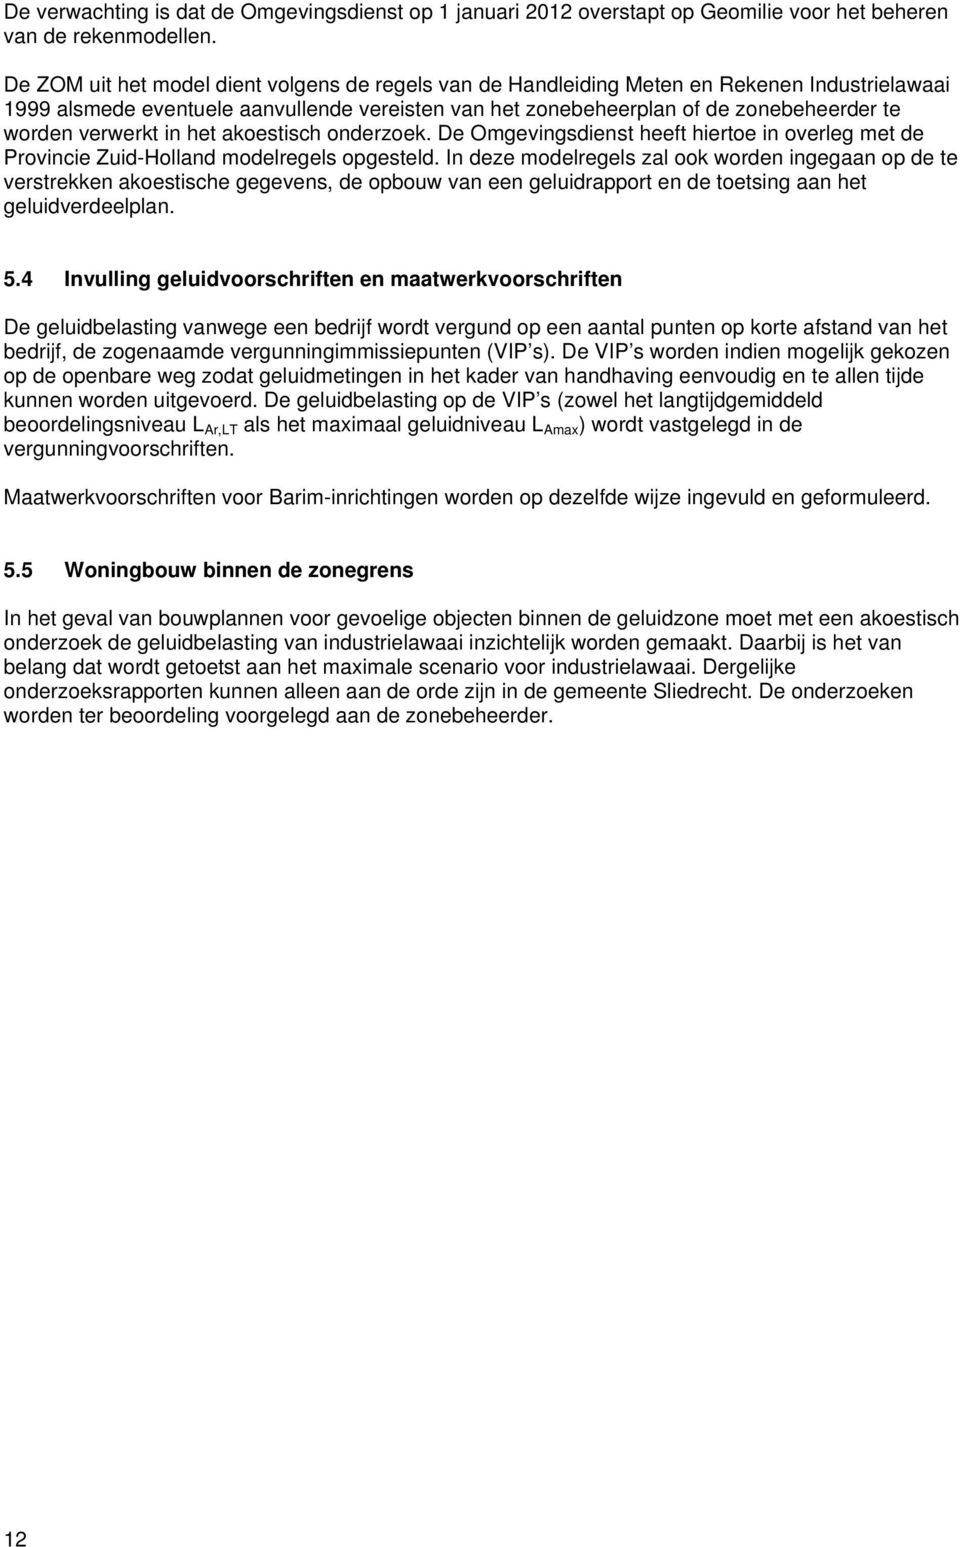 verwerkt in het akoestisch onderzoek. De Omgevingsdienst heeft hiertoe in overleg met de Provincie Zuid-Holland modelregels opgesteld.